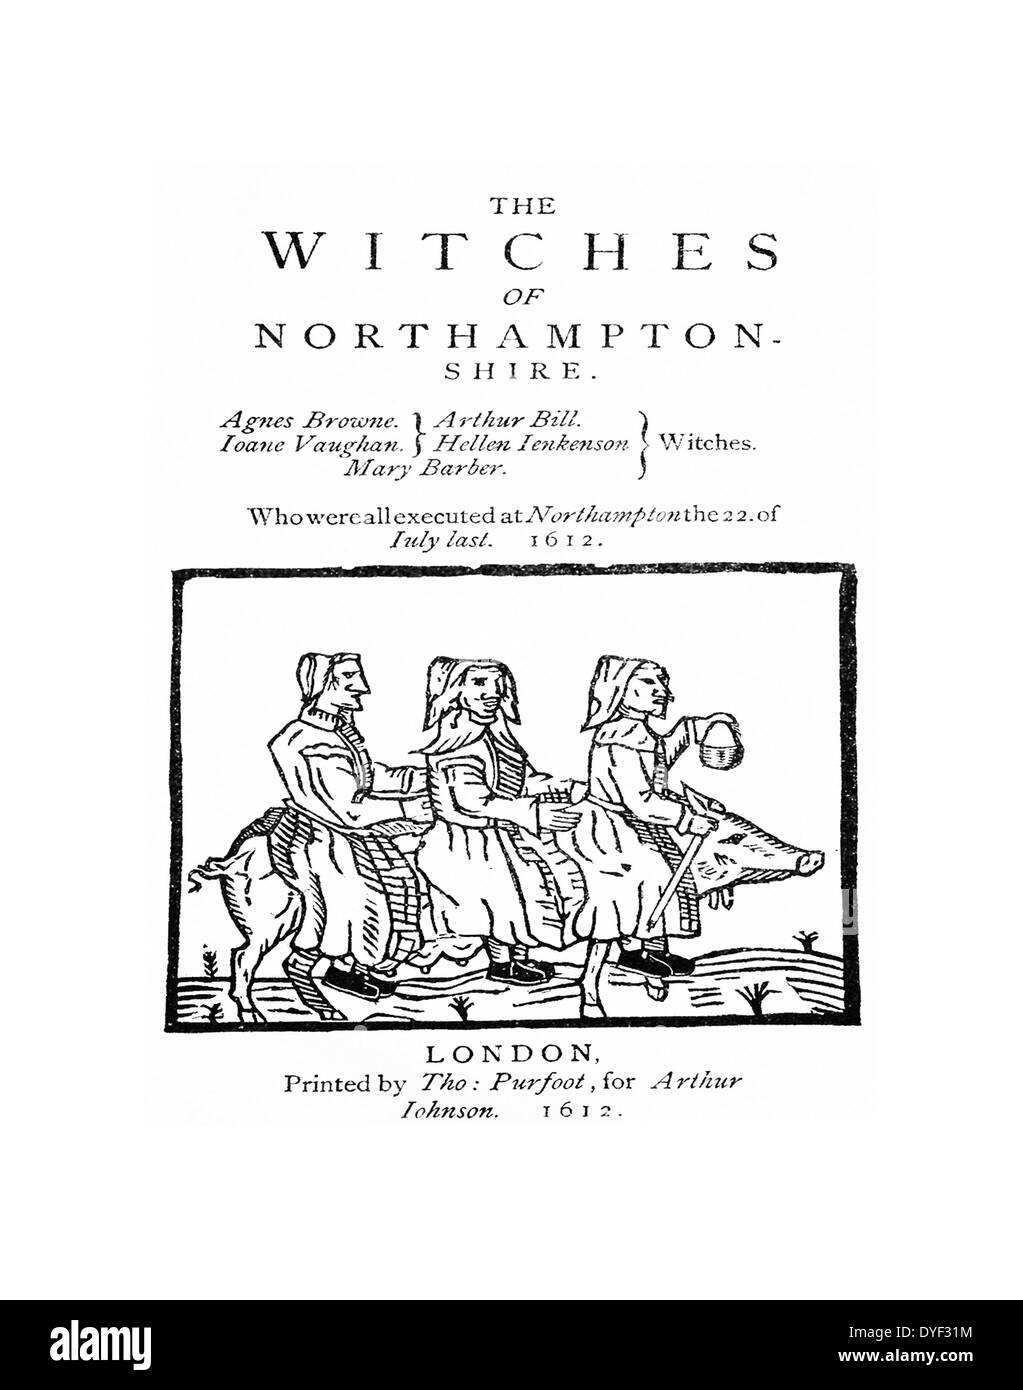 Couverture de la brochure "Les Sorcières de Northampton' montrant trois sorcières à cheval sur une truie, publié après le procès des sorcières de Northamptonshire 1612 par Arthur Johnson Banque D'Images